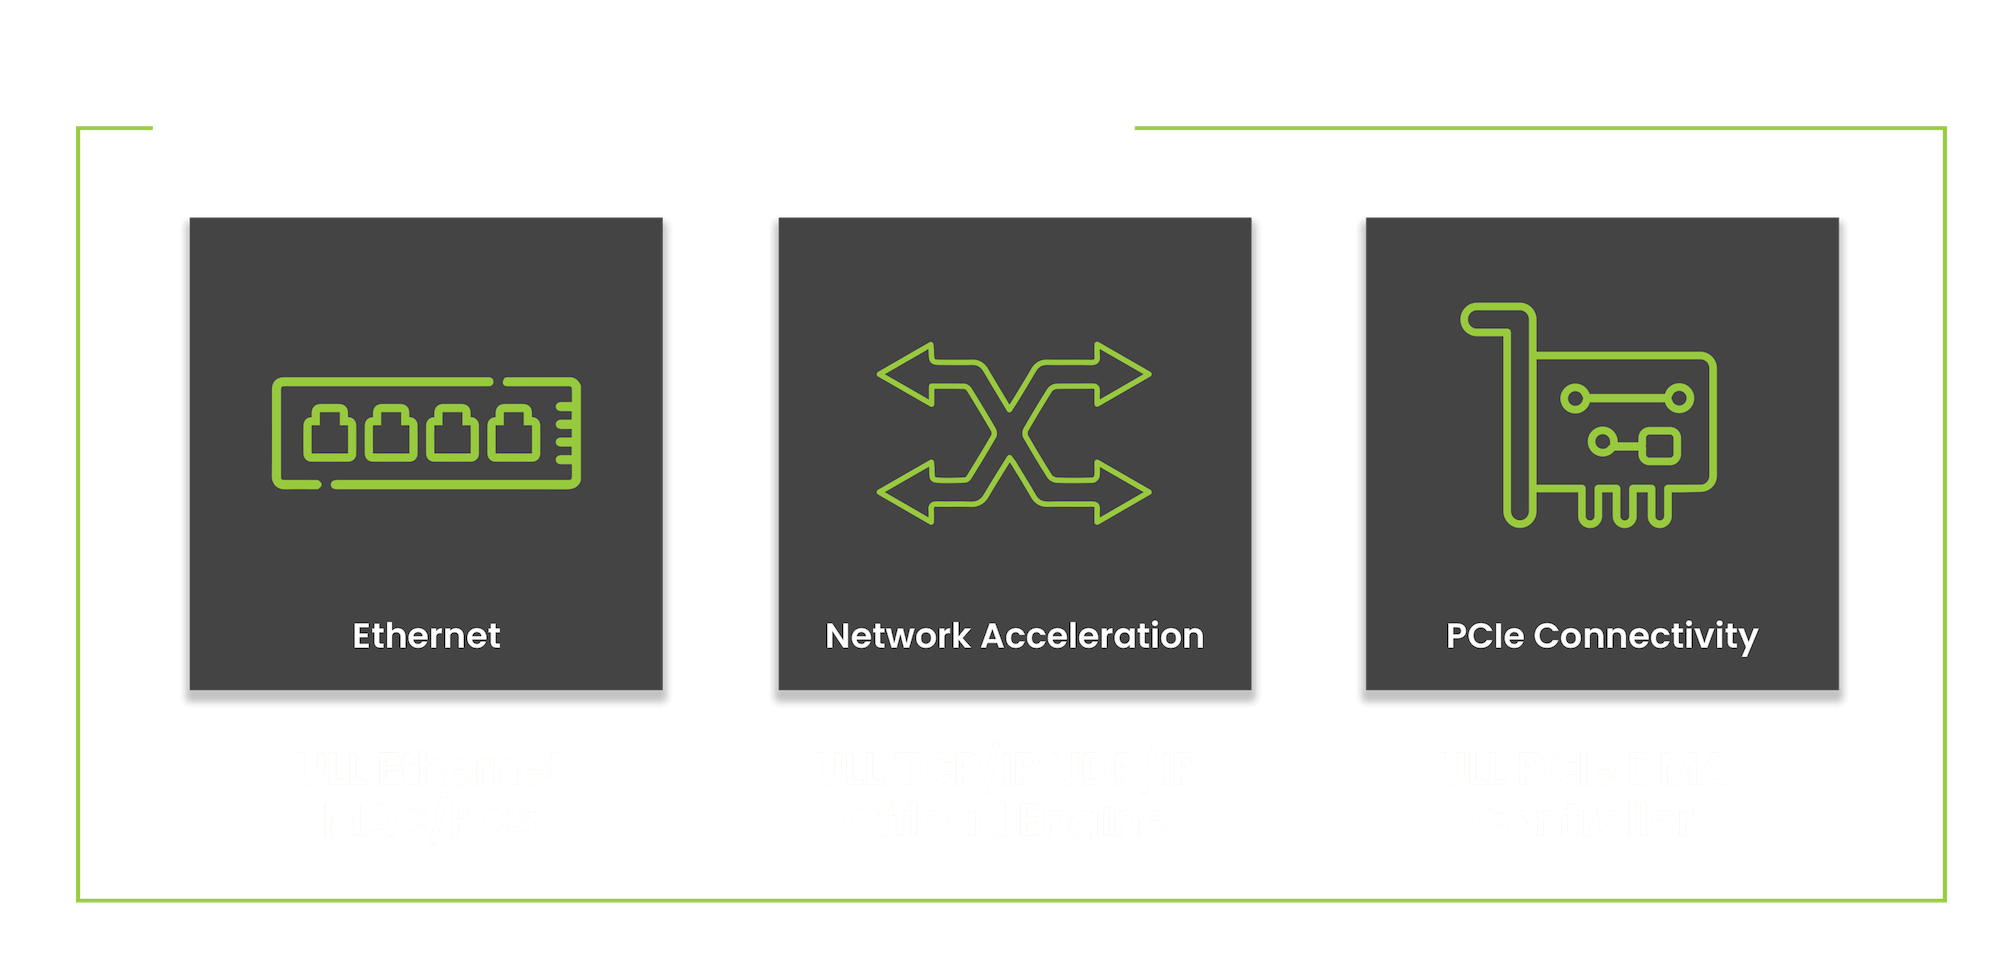 ULL FPGA Framework